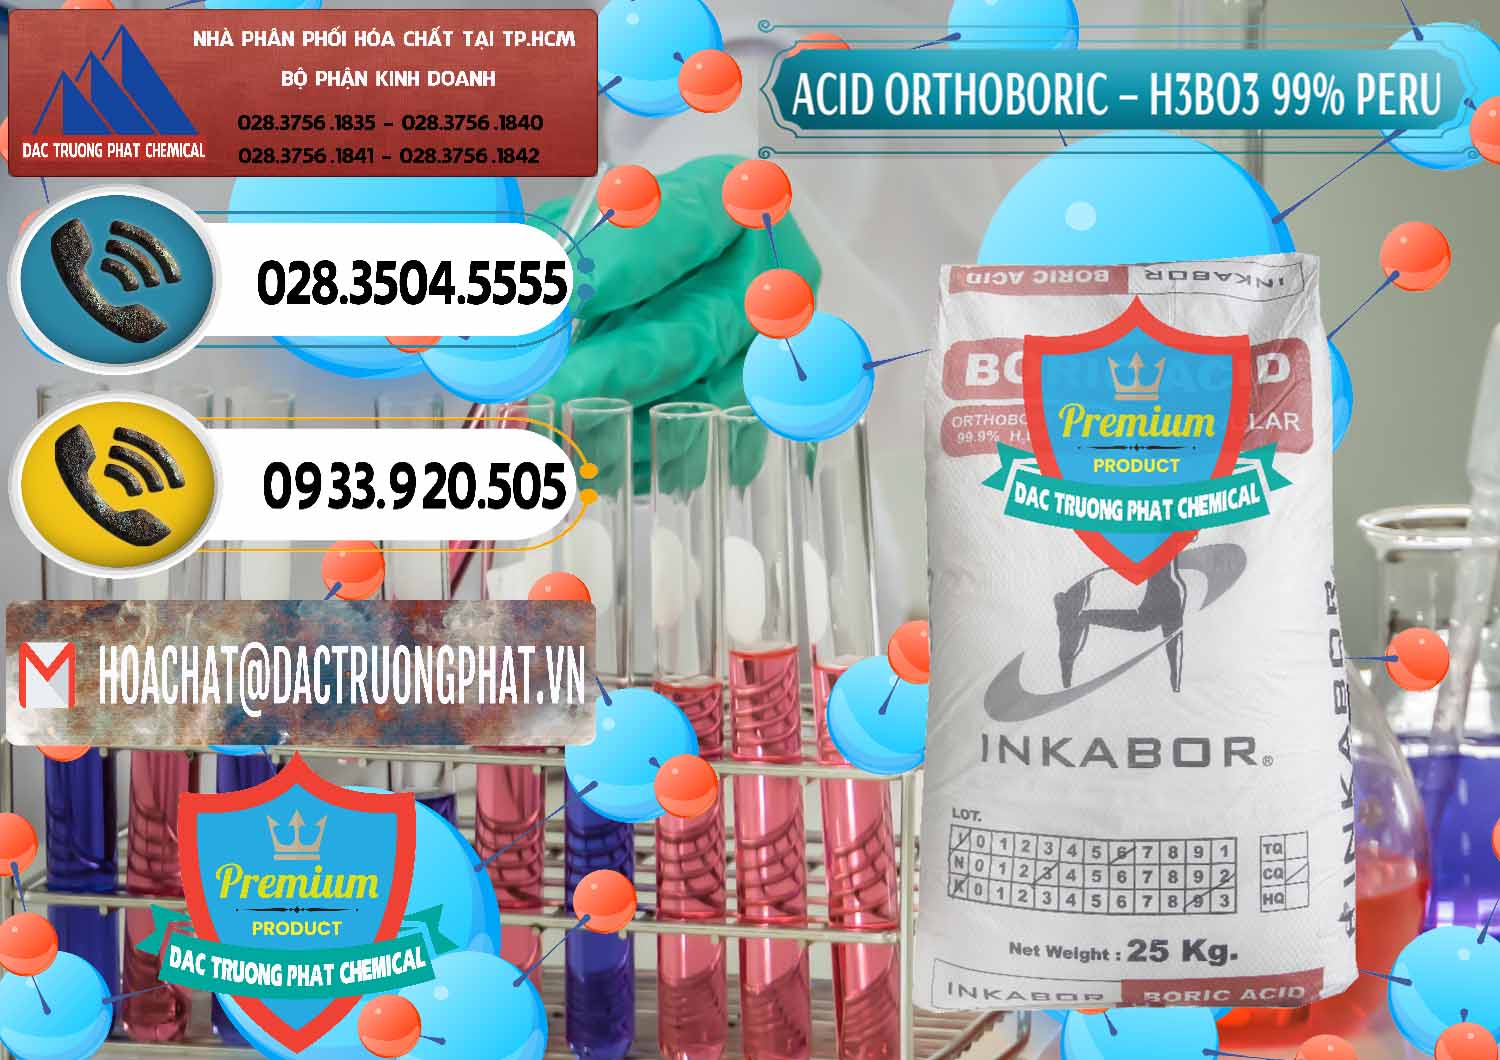 Nơi bán _ cung cấp Acid Boric – Axit Boric H3BO3 99% Inkabor Peru - 0280 - Cty nhập khẩu và cung cấp hóa chất tại TP.HCM - hoachatdetnhuom.vn